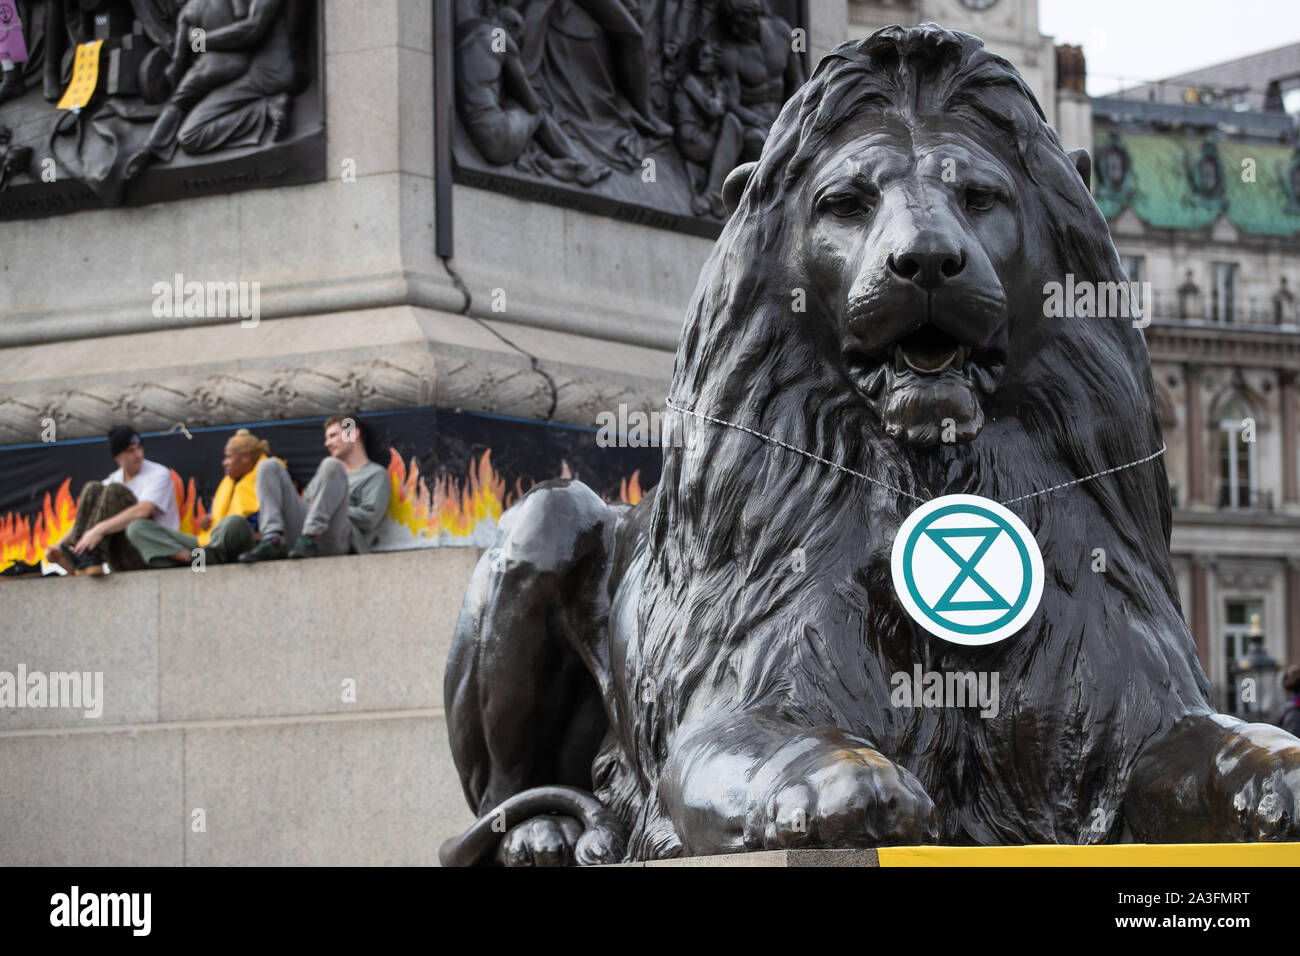 Ein Banner drapierten über einem Der Landseer Lions während eines Aussterben Rebellion (XR) Protest in Trafalgar Square in London. Stockfoto